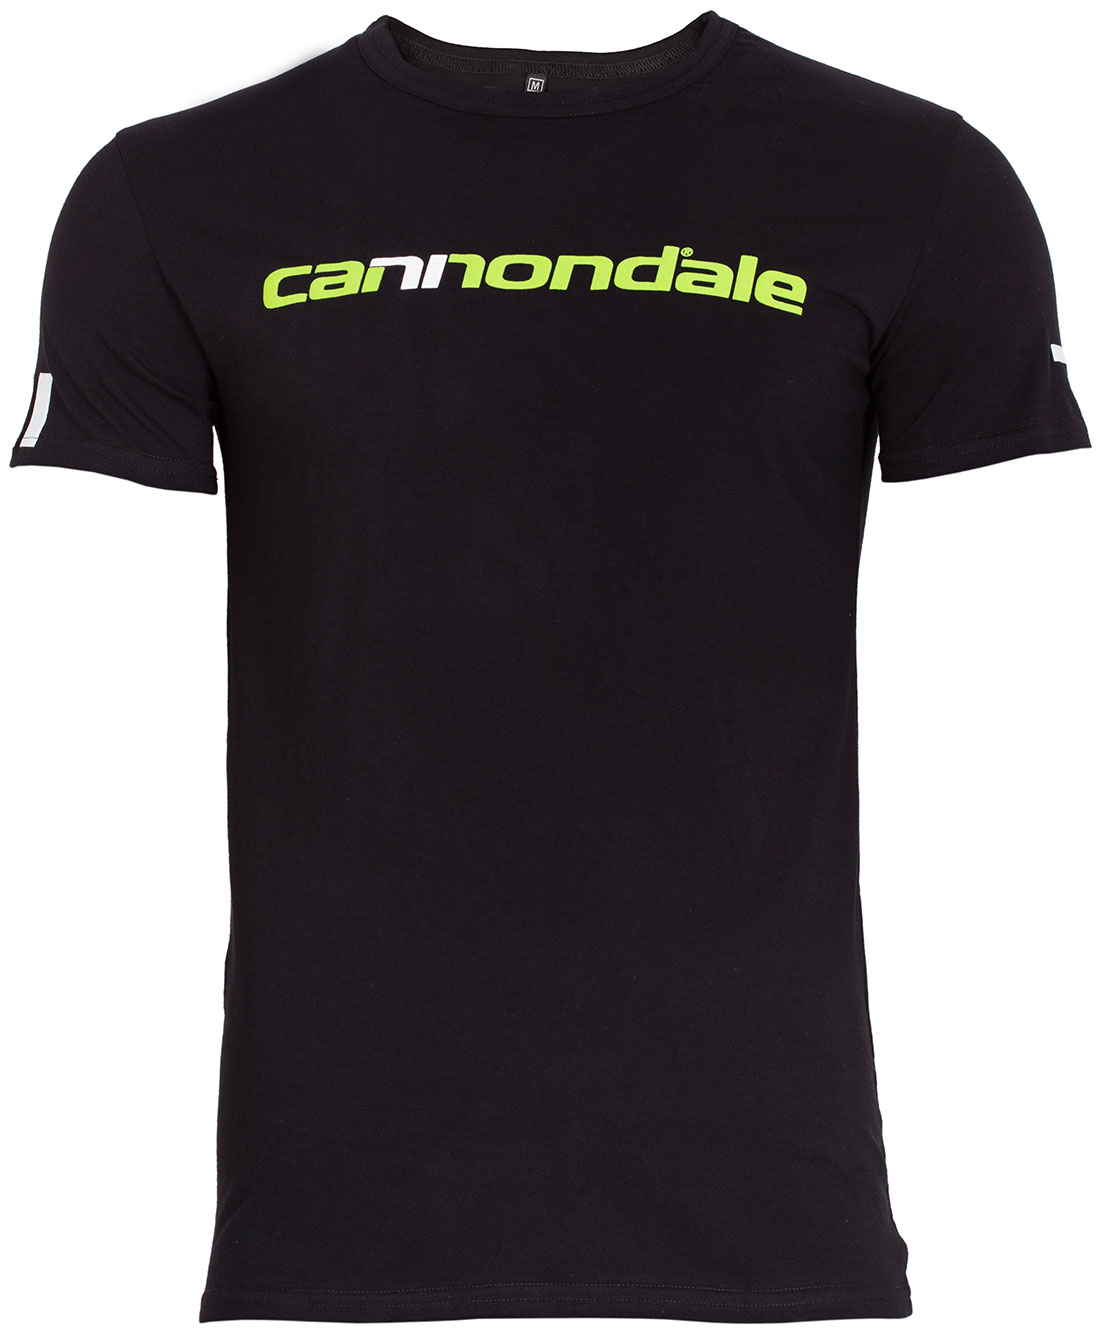 Футболка Cannondale с горизонтальным двухцветным логотипом, черная, размер XL